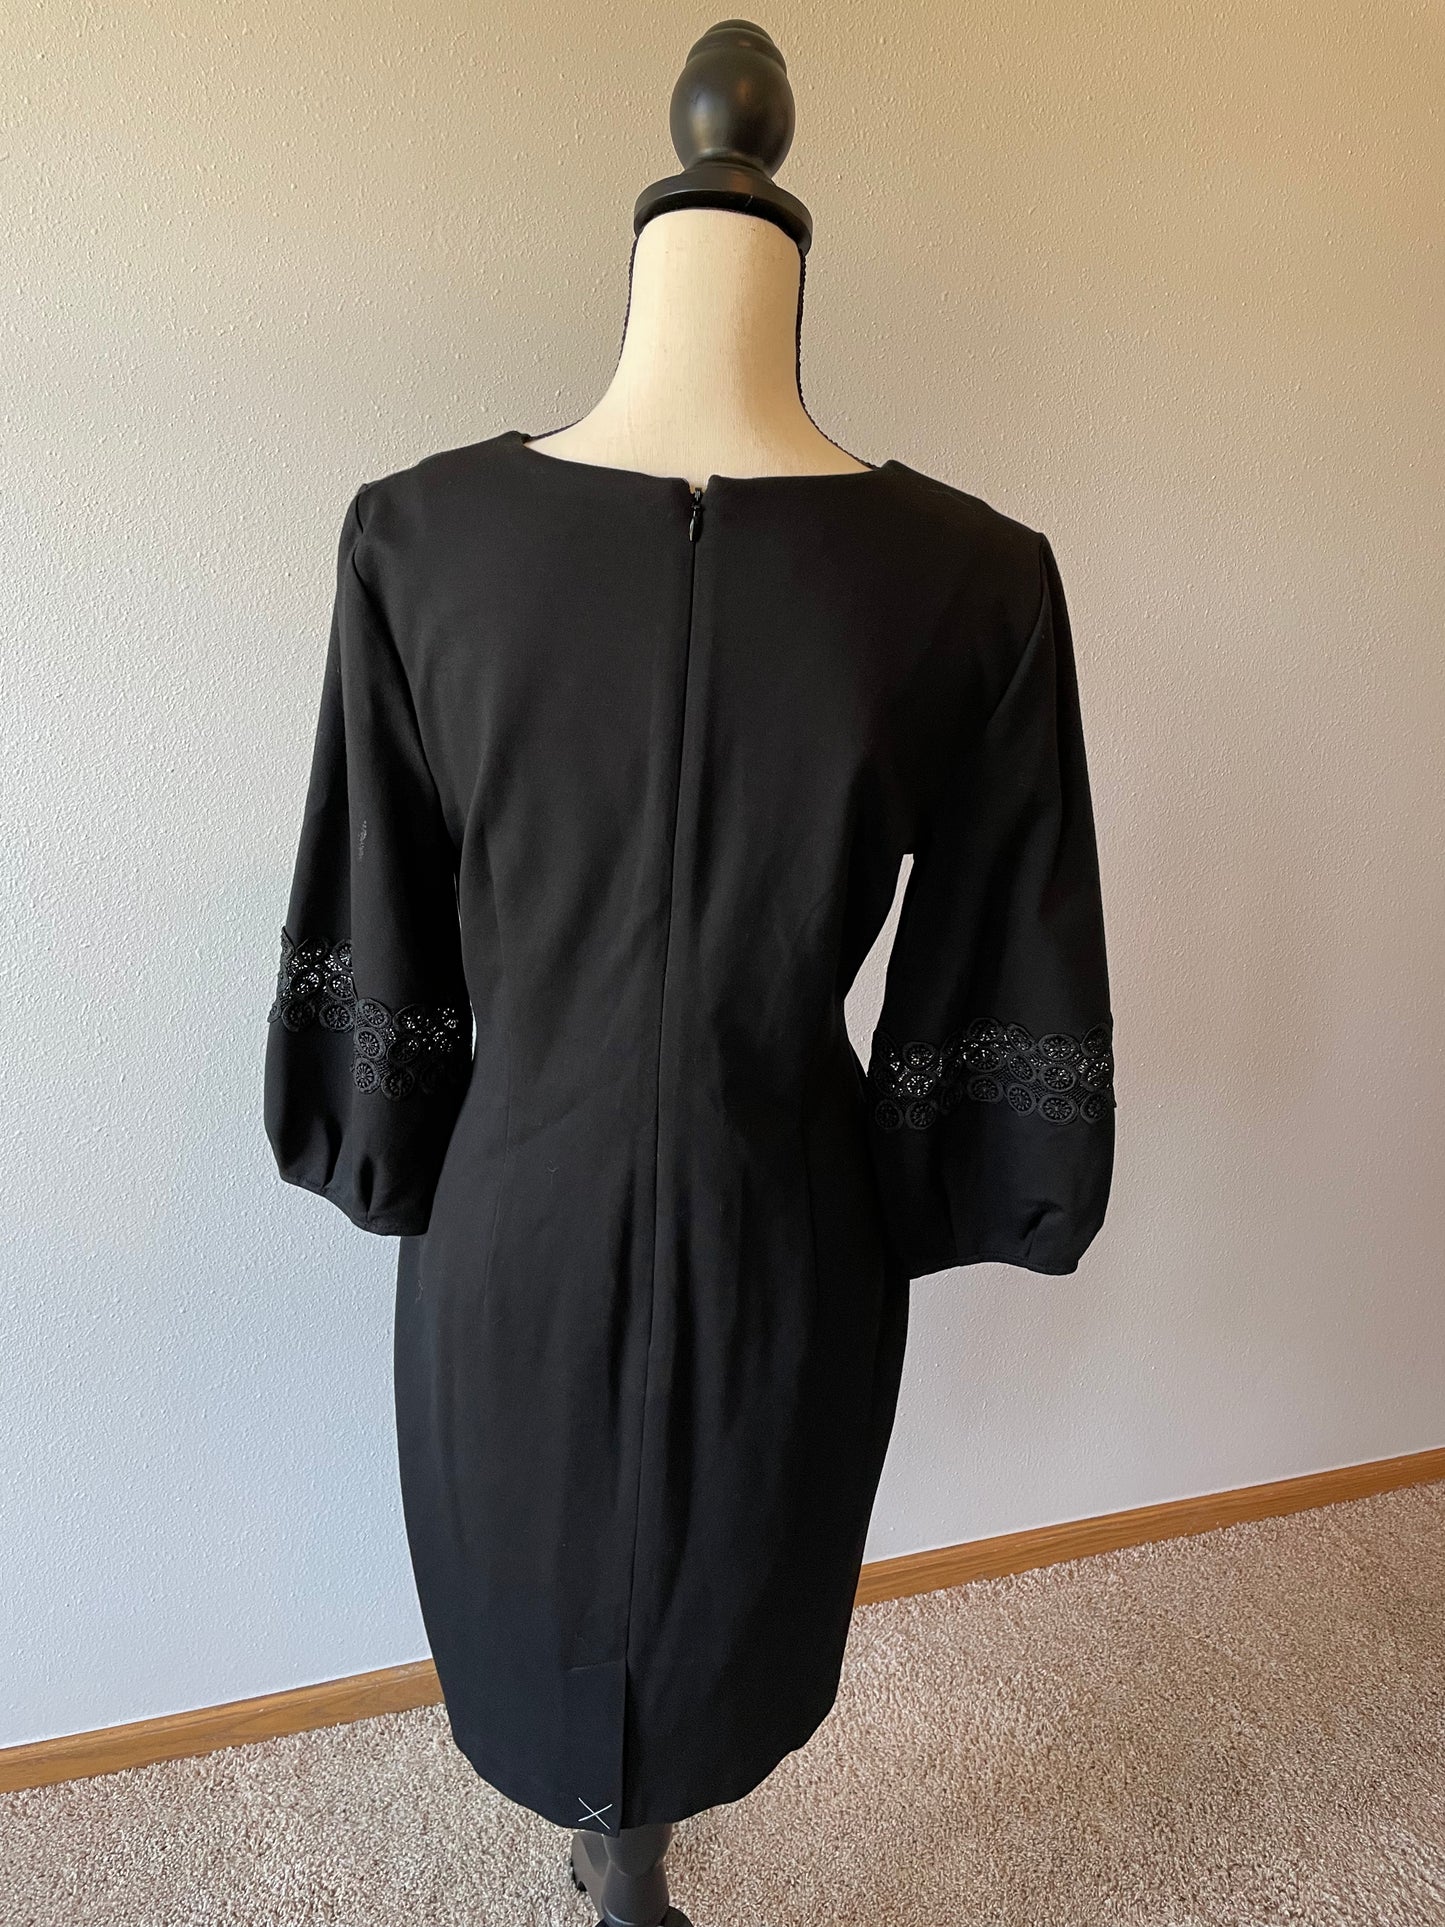 Talbots Black Dress (8)